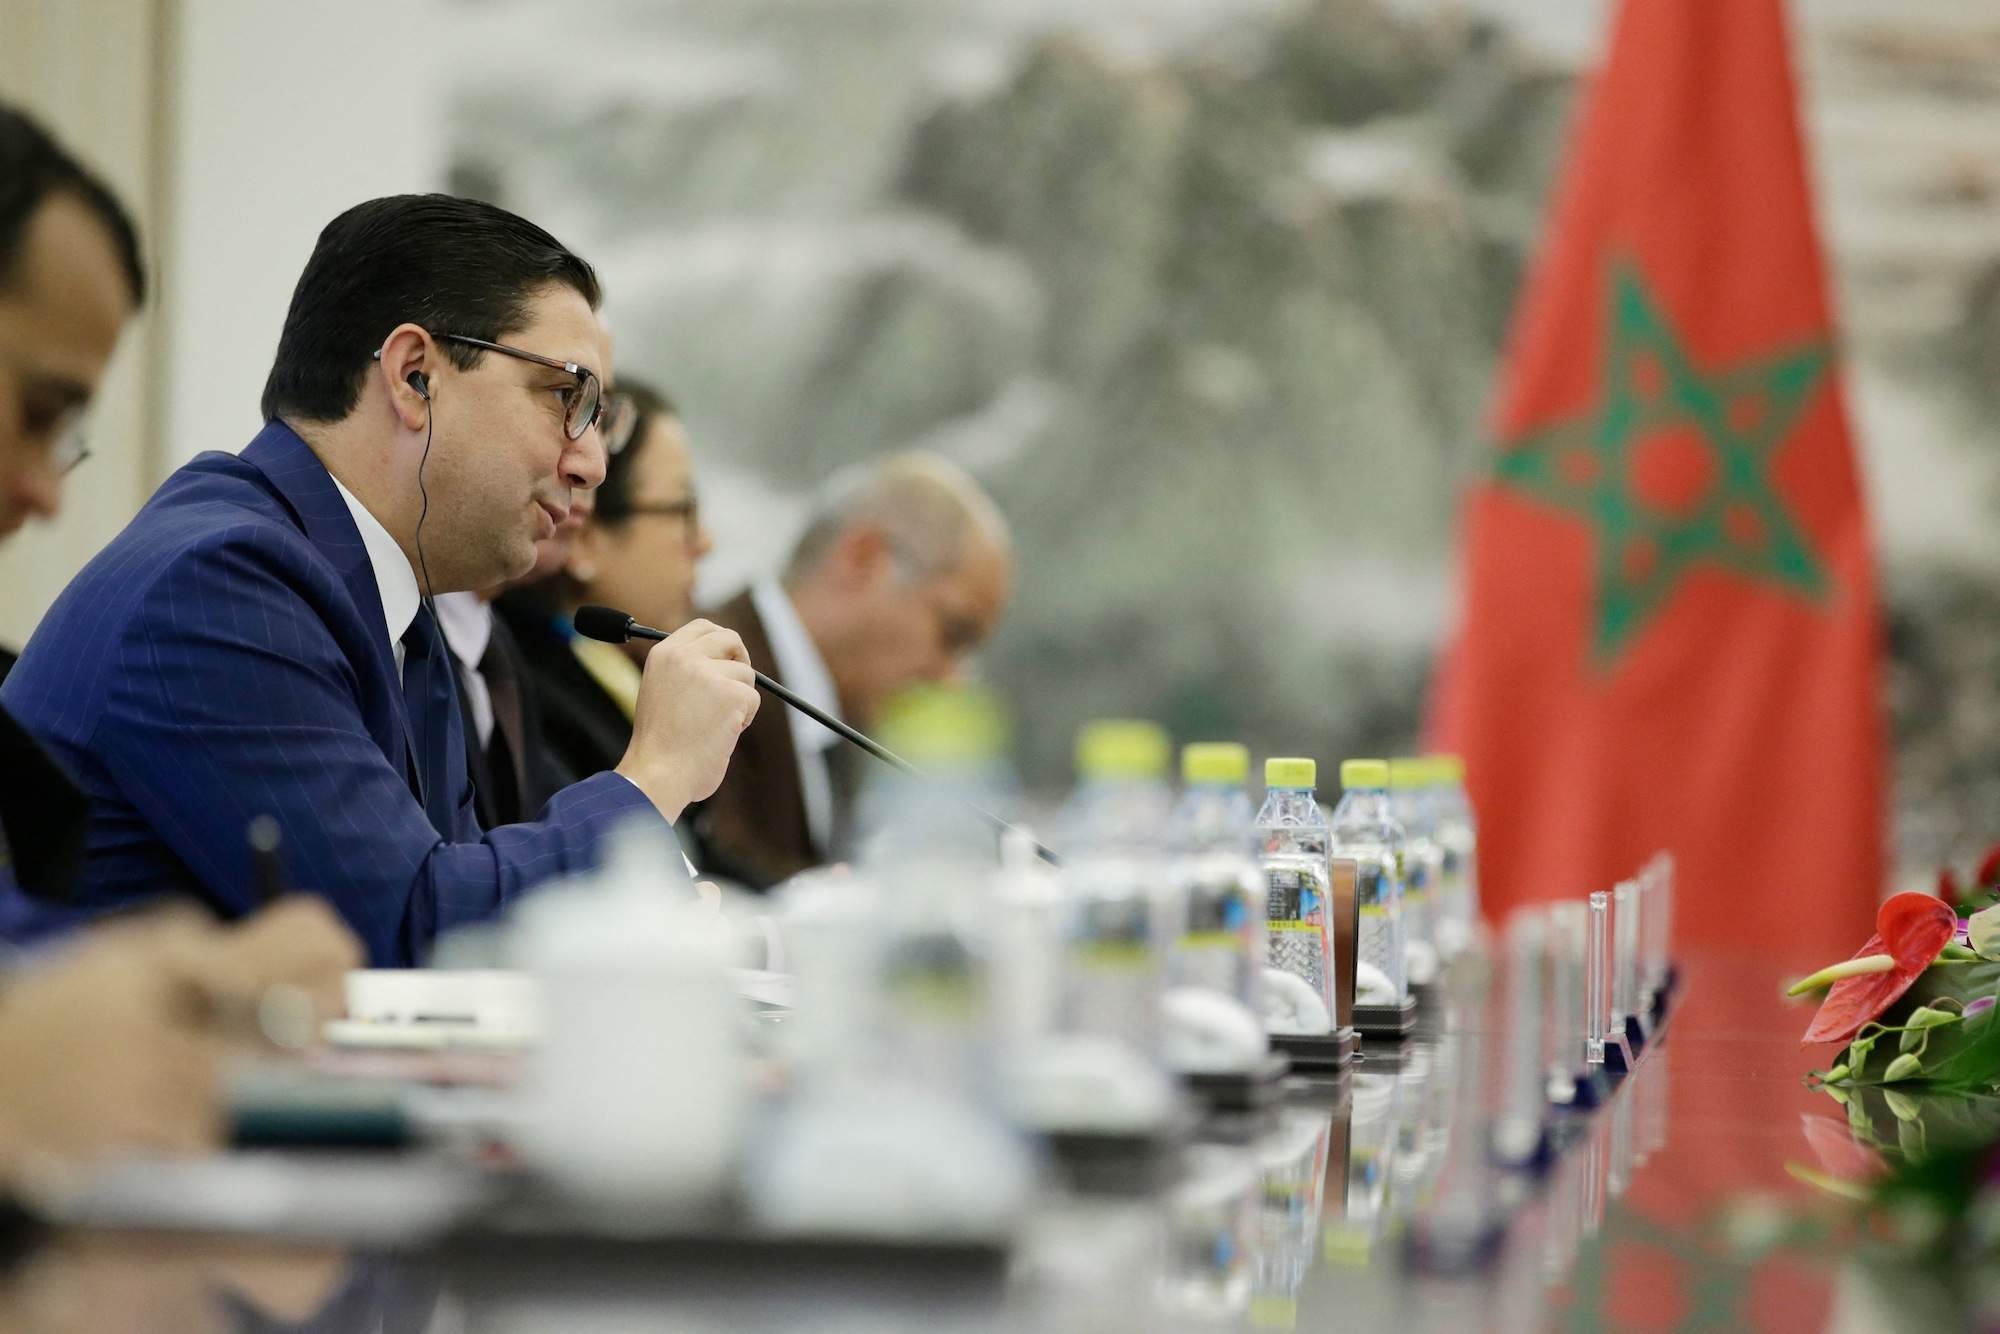 آخرهم وزير أنكر وجود الفلسطينيين.. المغرب يعبر عن قلقه من تصريحات مستفزة لأعضاء حكومة إسرائيل